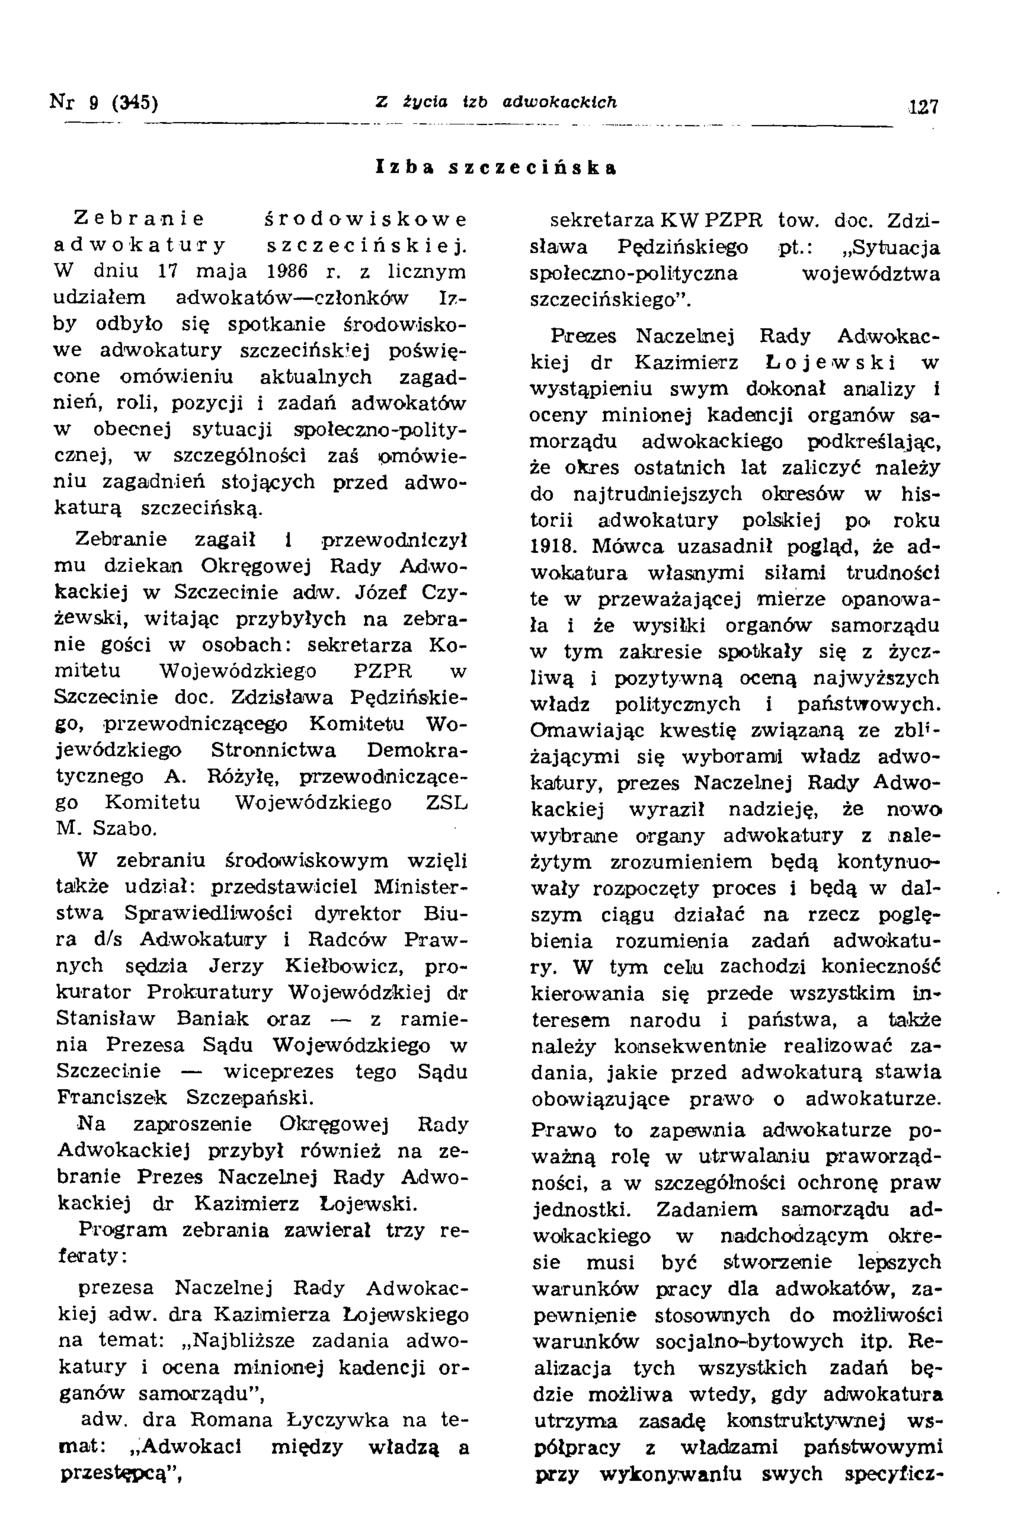 Nr 9 (345) Z żucia izb adwokackich 127 Izba szczecińska Zebranie środowiskowe adwokatury szczecińskiej. W dniu 17 maja 1986 r.